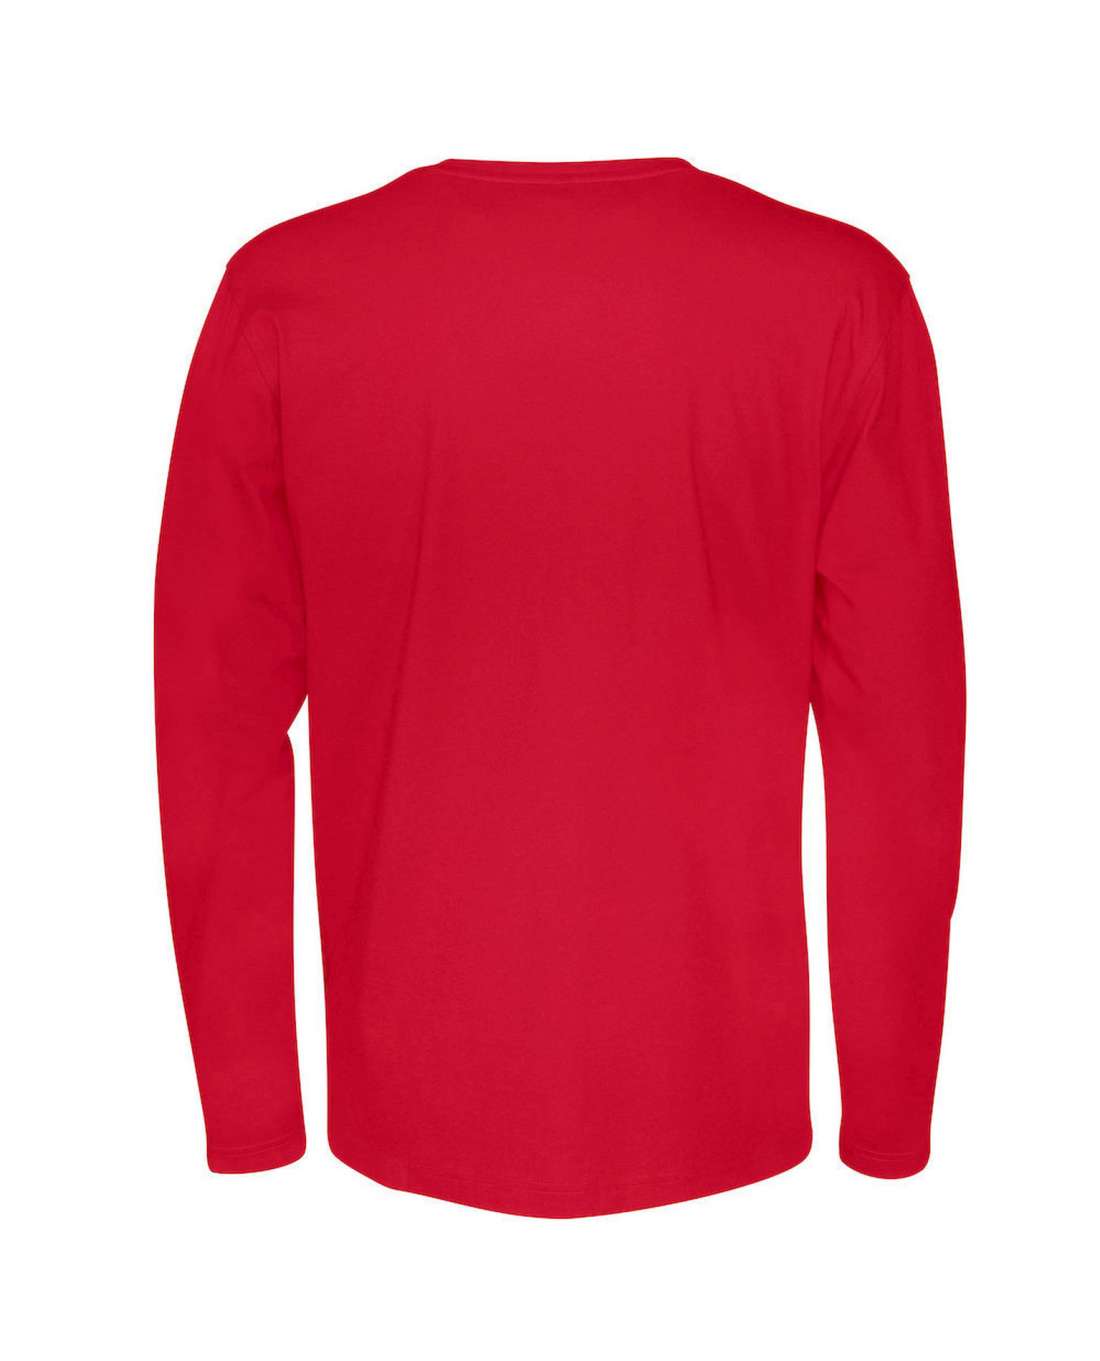 Cottover Miesten pitkähihainen T-paita, Punainen